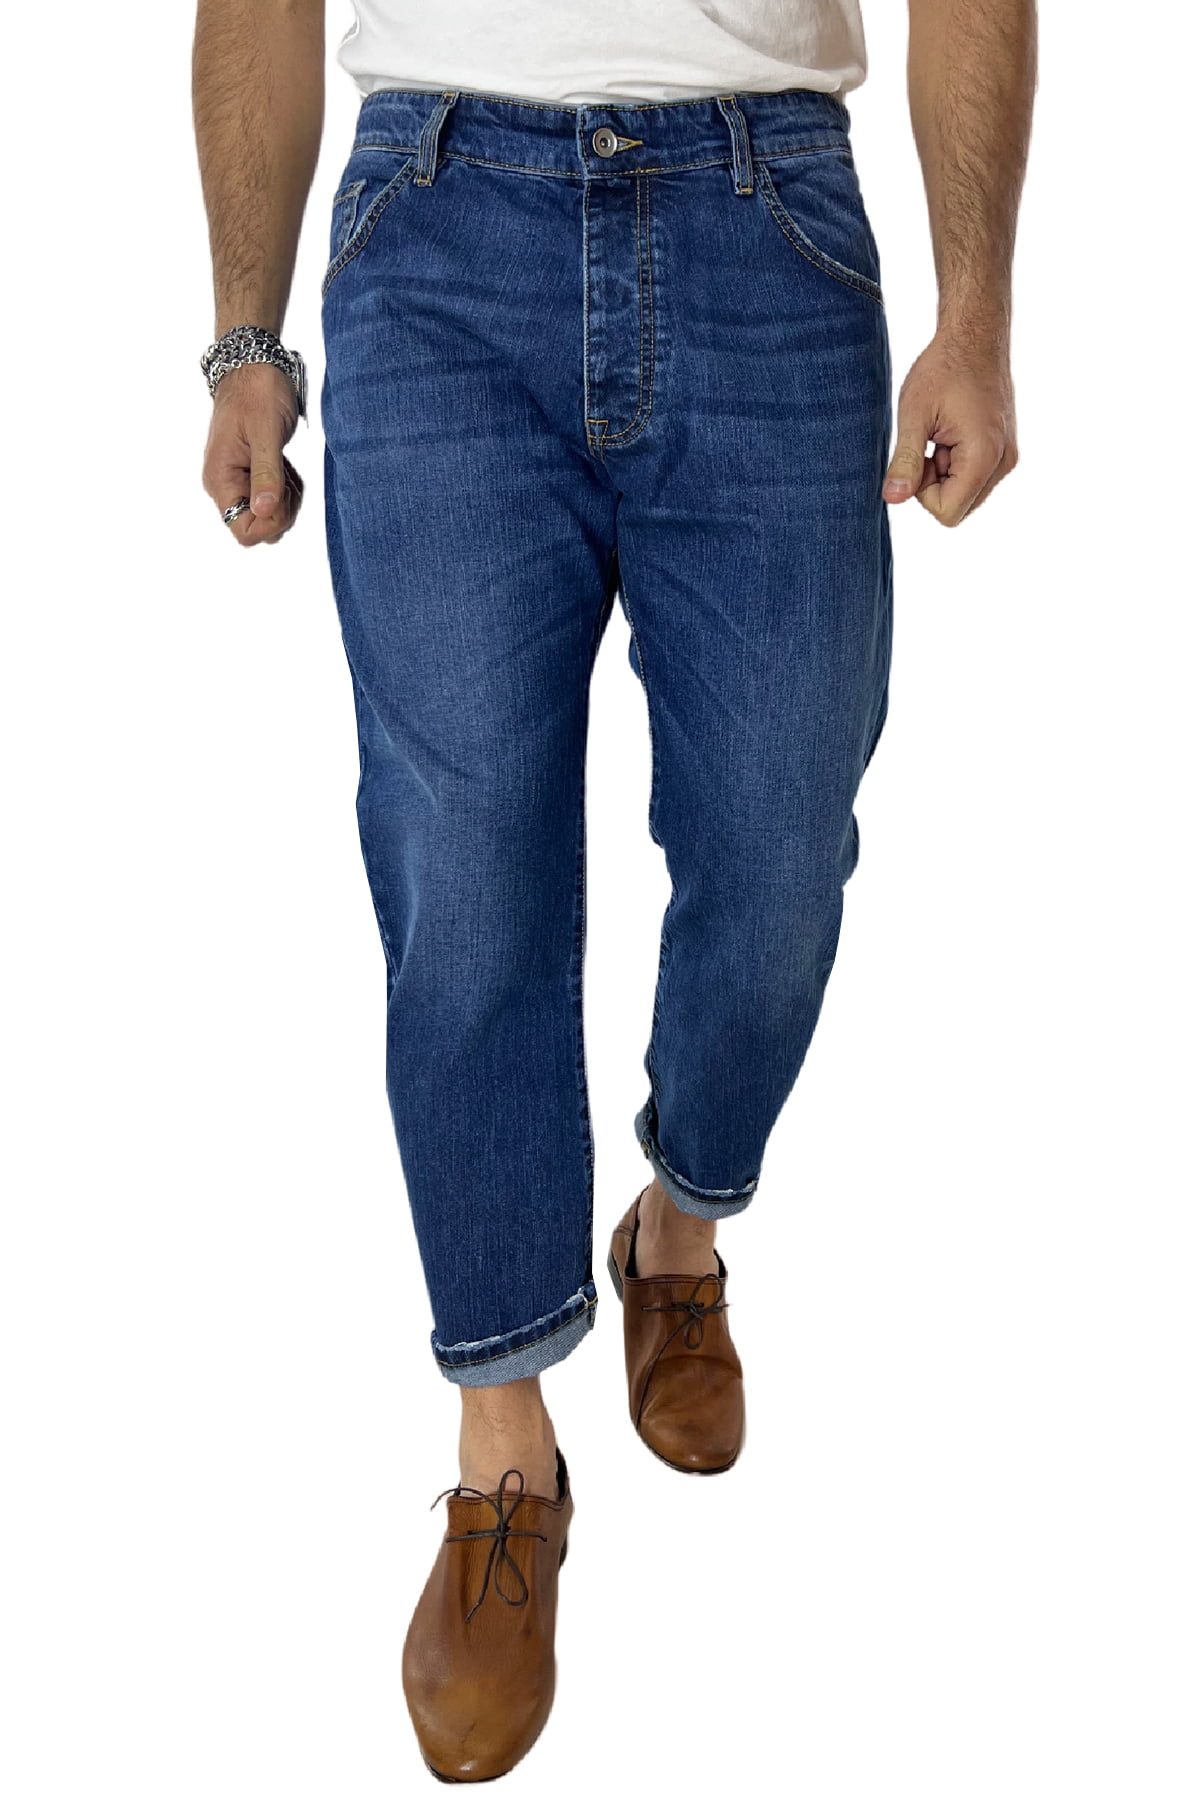 Jeans da uomo con sfumature bianche modello 5 tasche regular fit made in italy